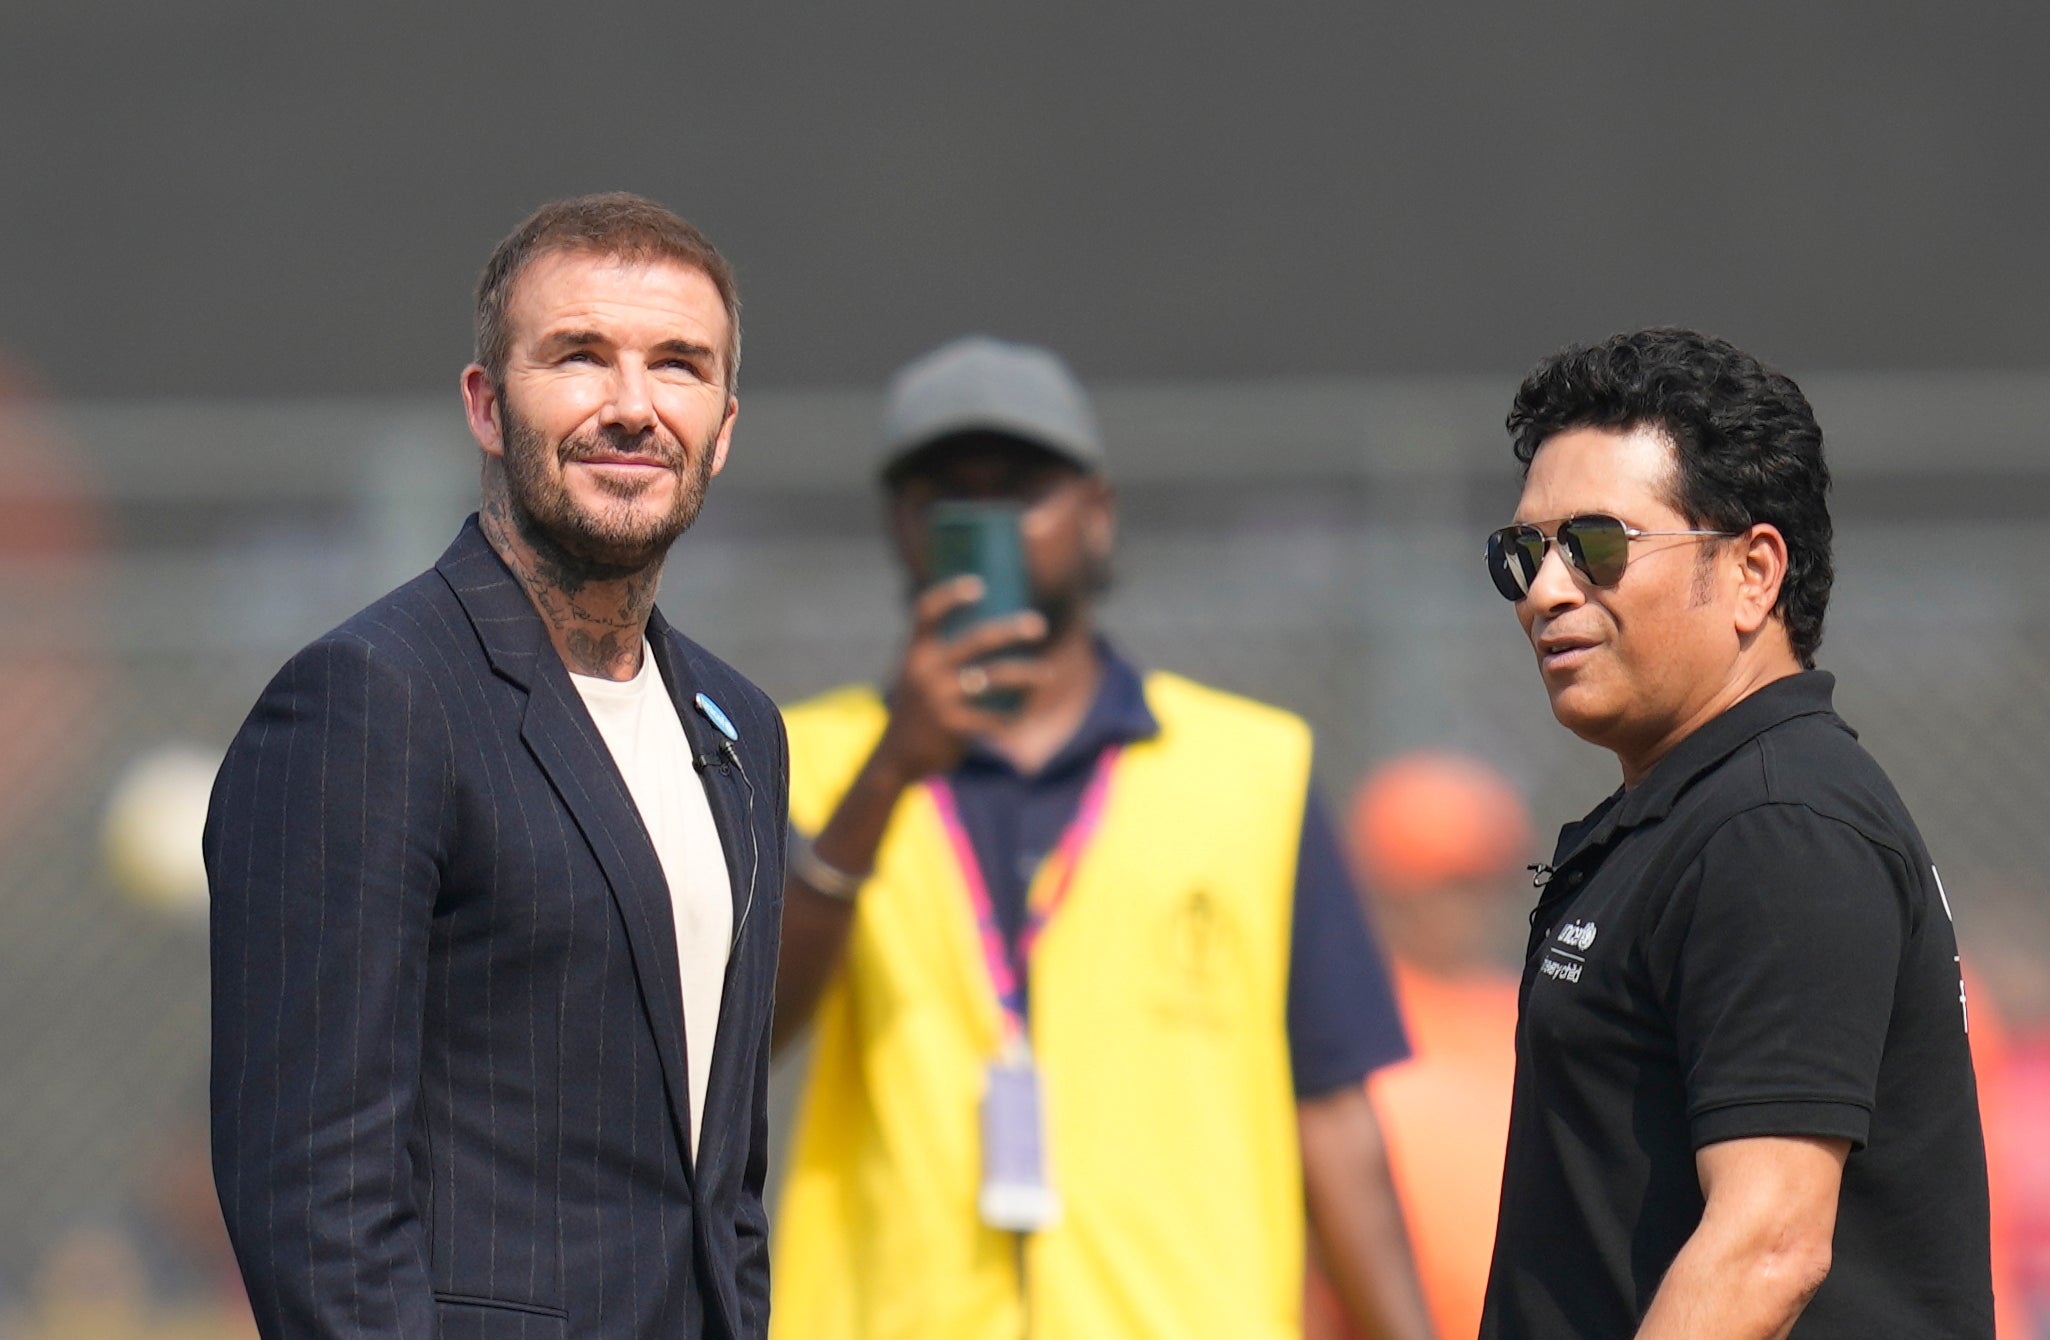 David Beckham with Sachin Tendulkar before the coin toss